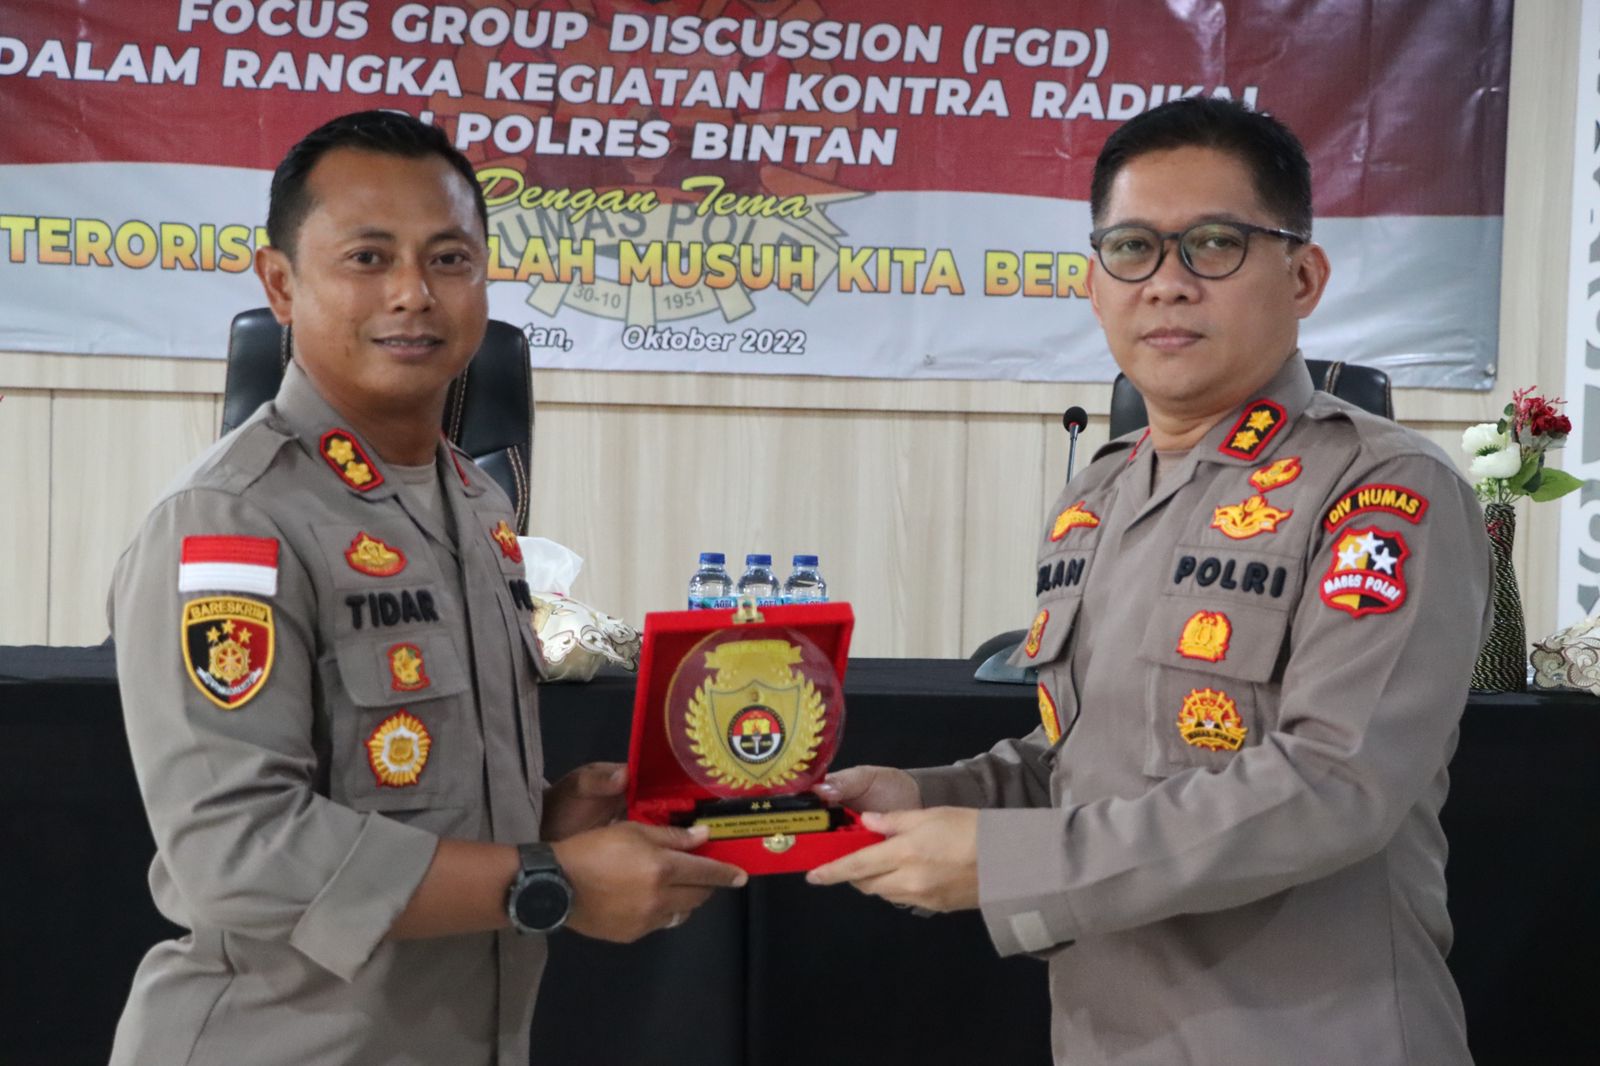 Kapolres Bintan Dampingi Tim Divisi Humas Polri, Laksanakan Focus Group Discussion (FGD) Cegah Paham Radikalisme